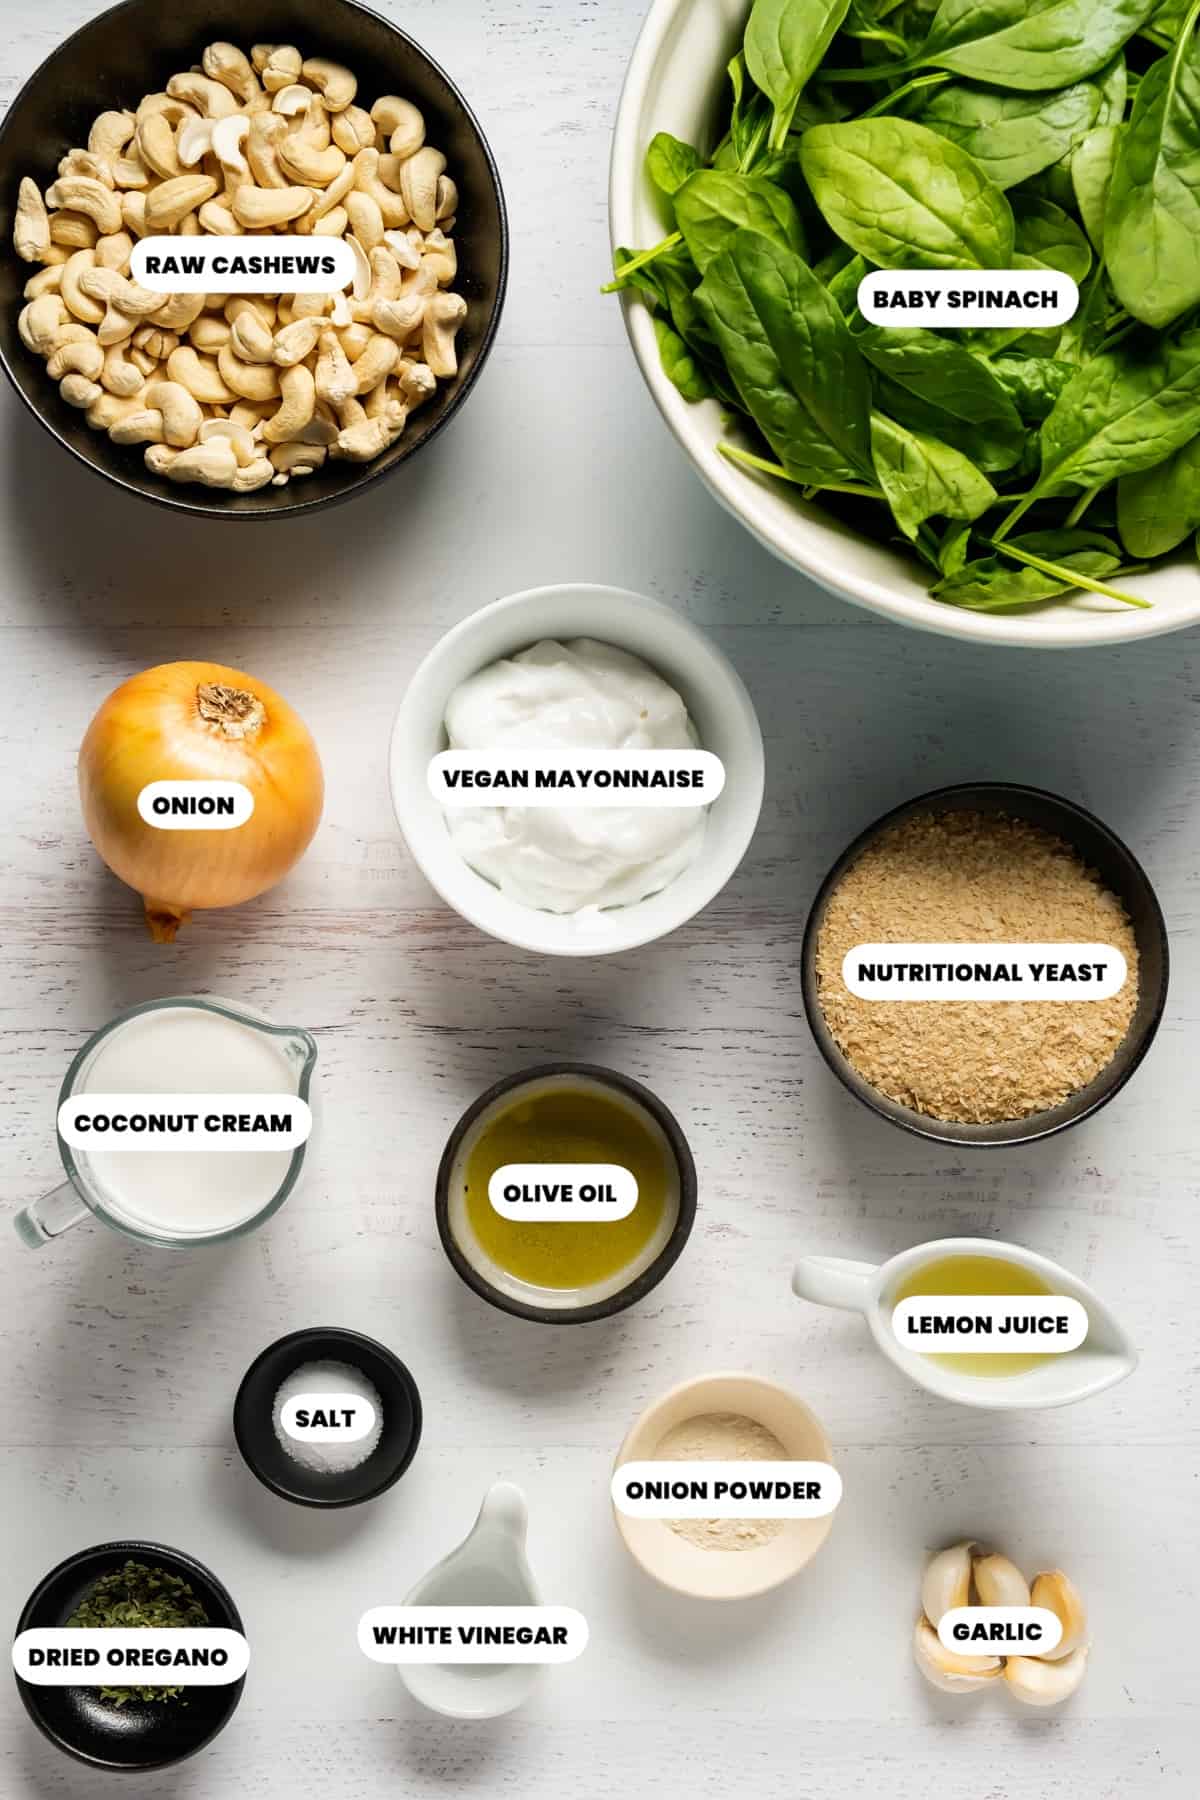 Ingredients to make vegan spinach dip